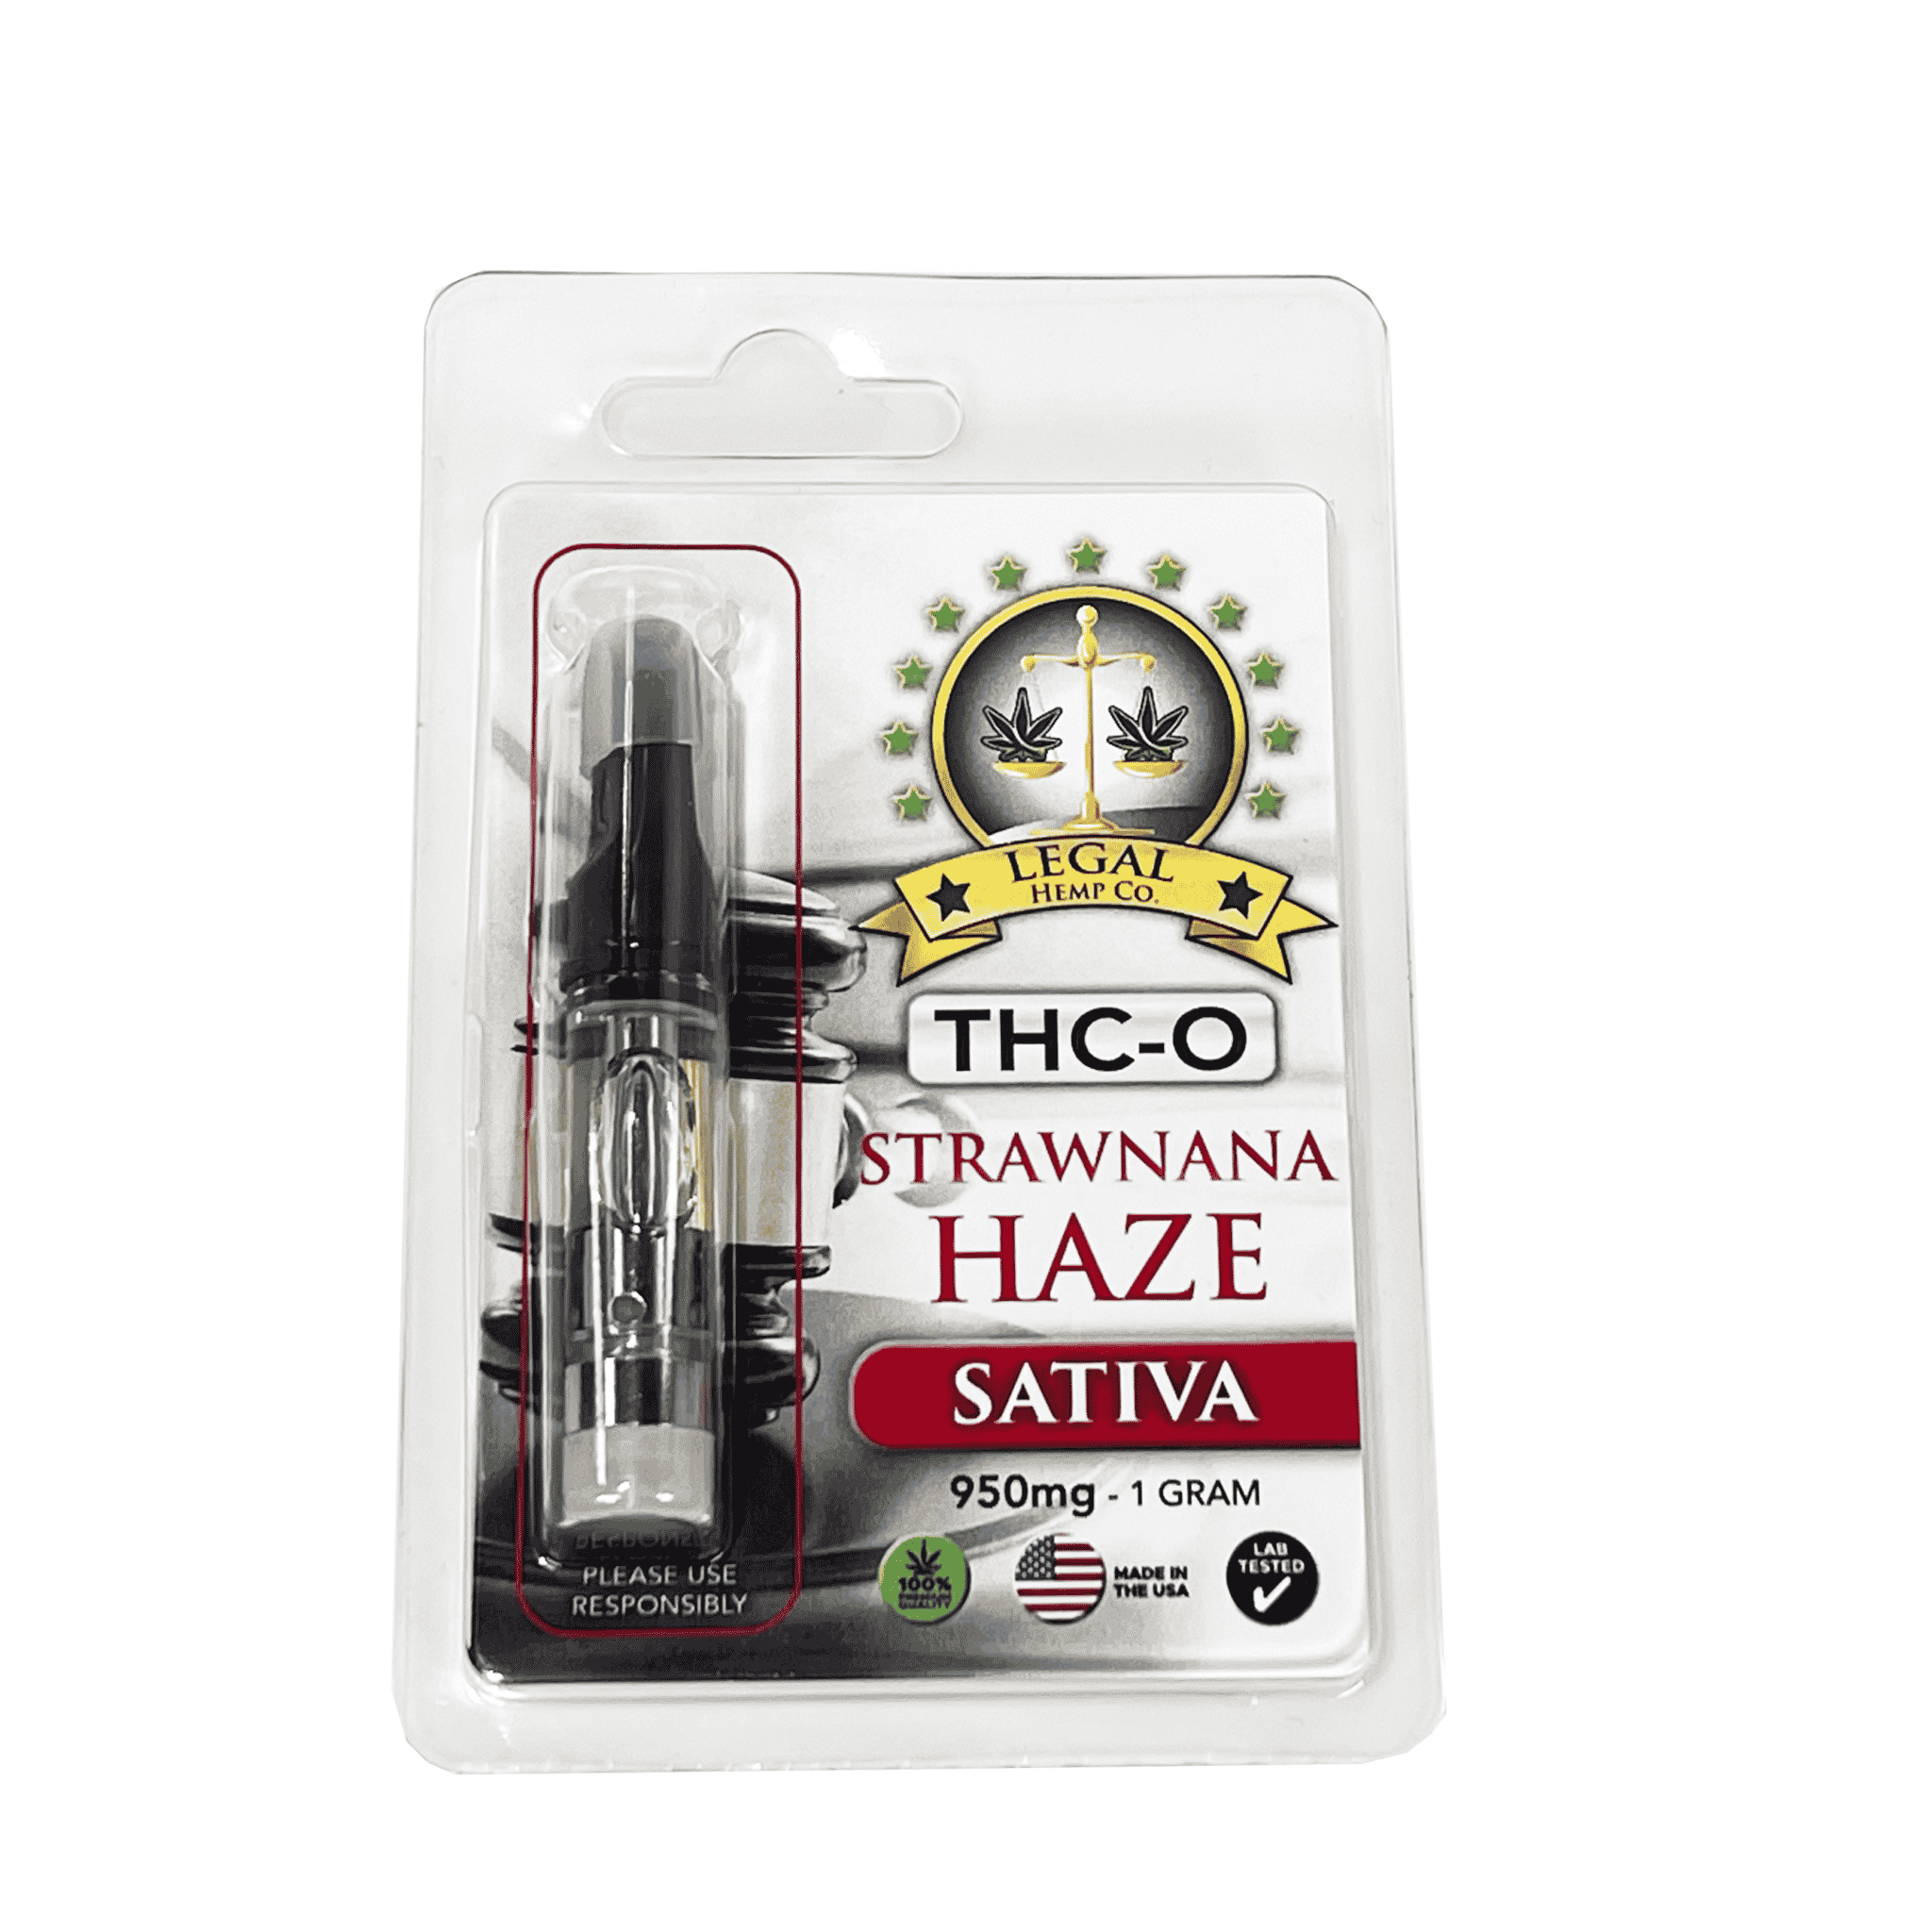 Legal Hemp Co. THC-O 950mg Cartridge strawnana haze